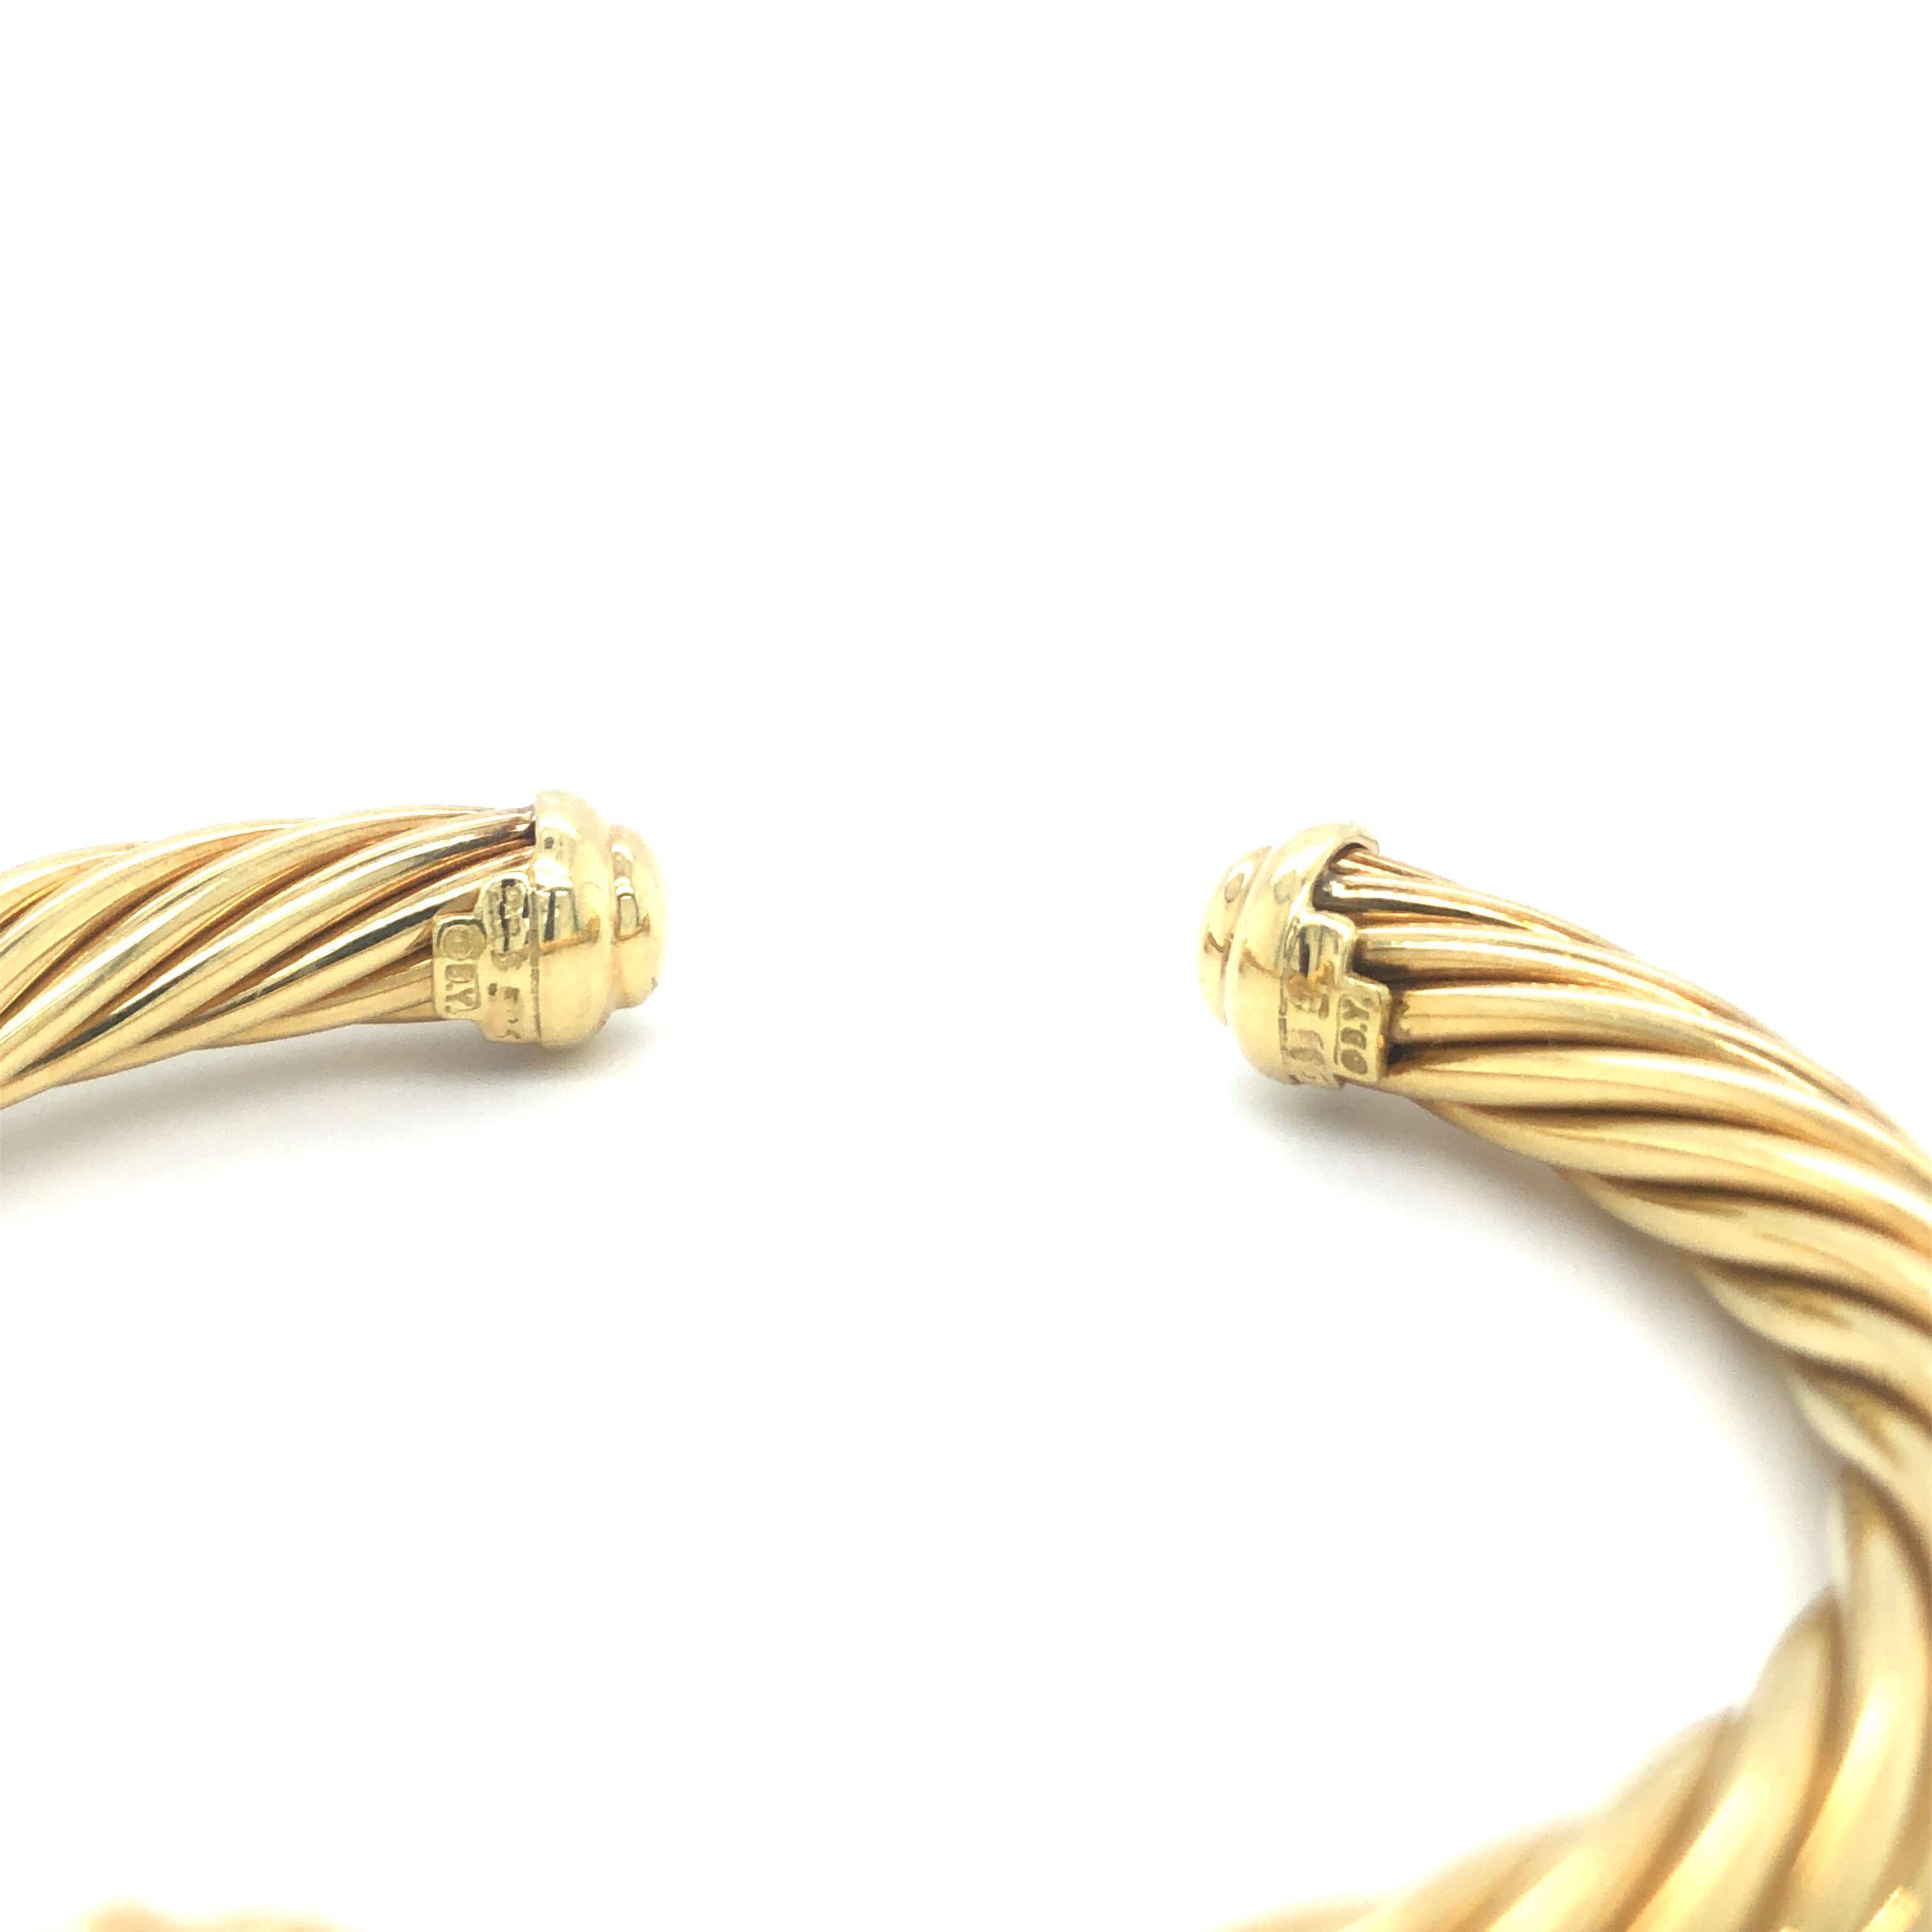 Round Cut David Yurman 18 Karat Yellow Gold and Diamond Twisted Cable Cuff Bracelet